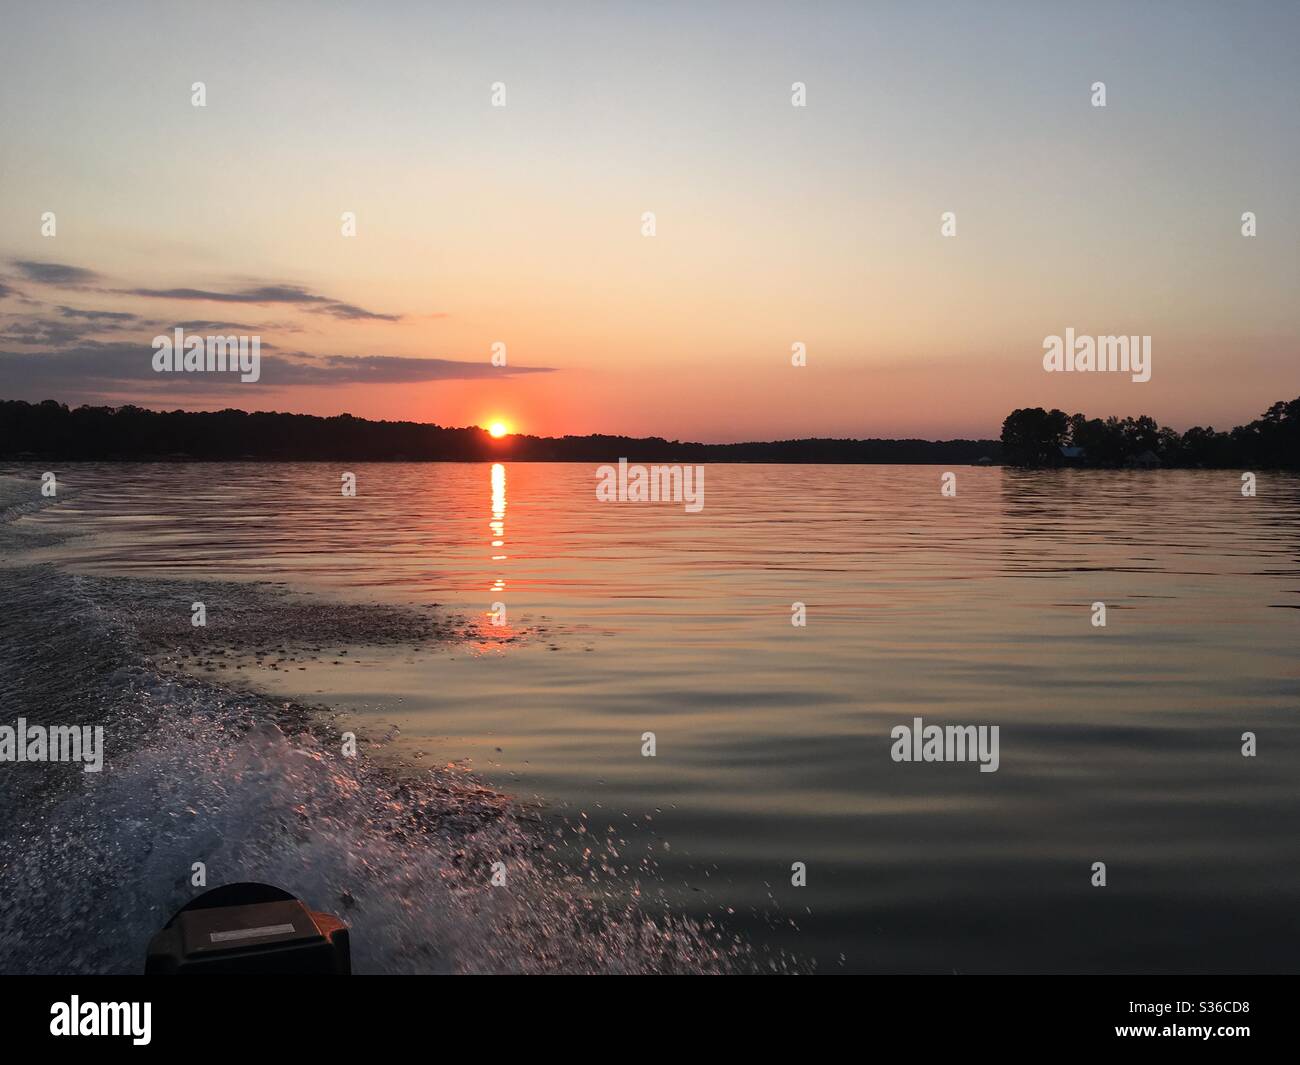 Lake sunset in Georgia Stock Photo